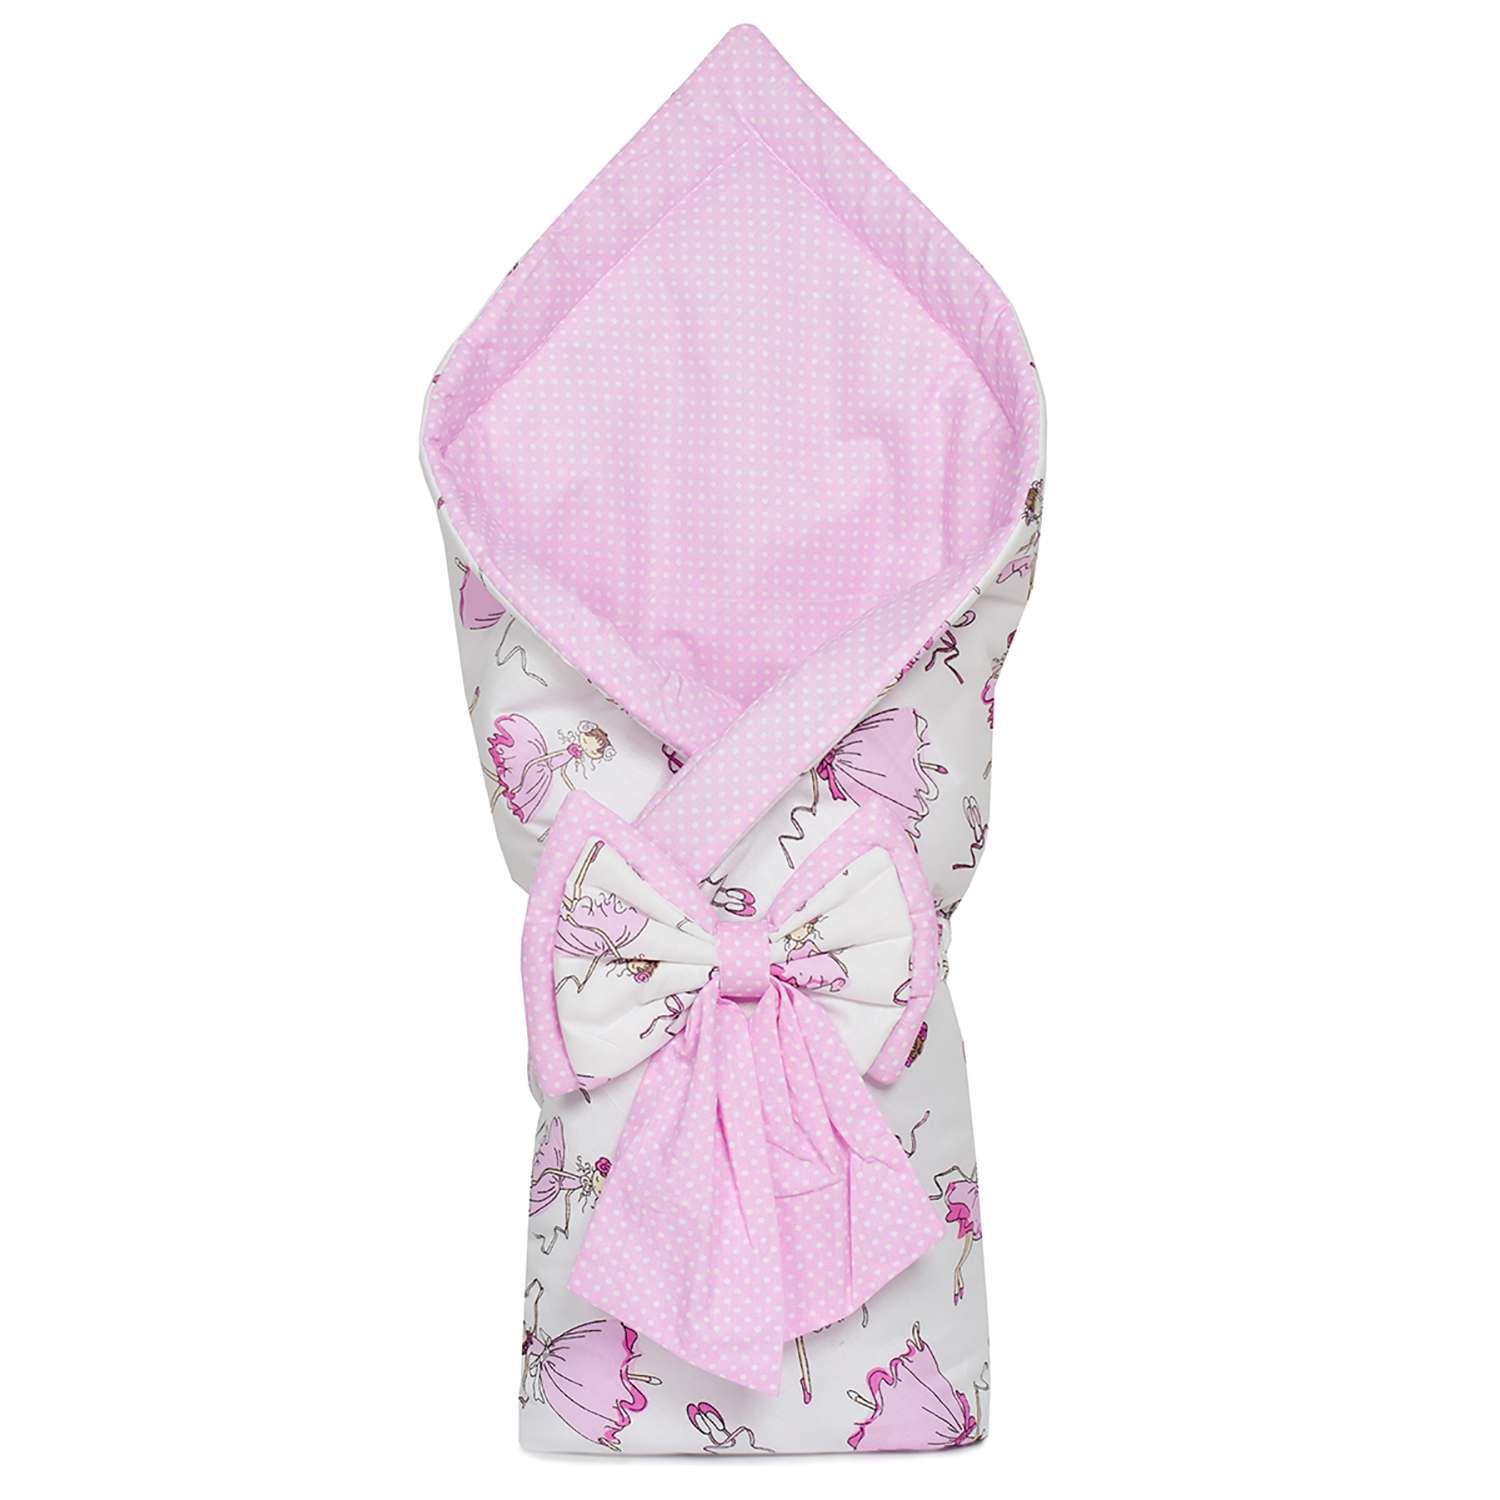 Конверт-одеяло Чудо-чадо для новорожденного на выписку Нелето балерины/розовый - фото 1